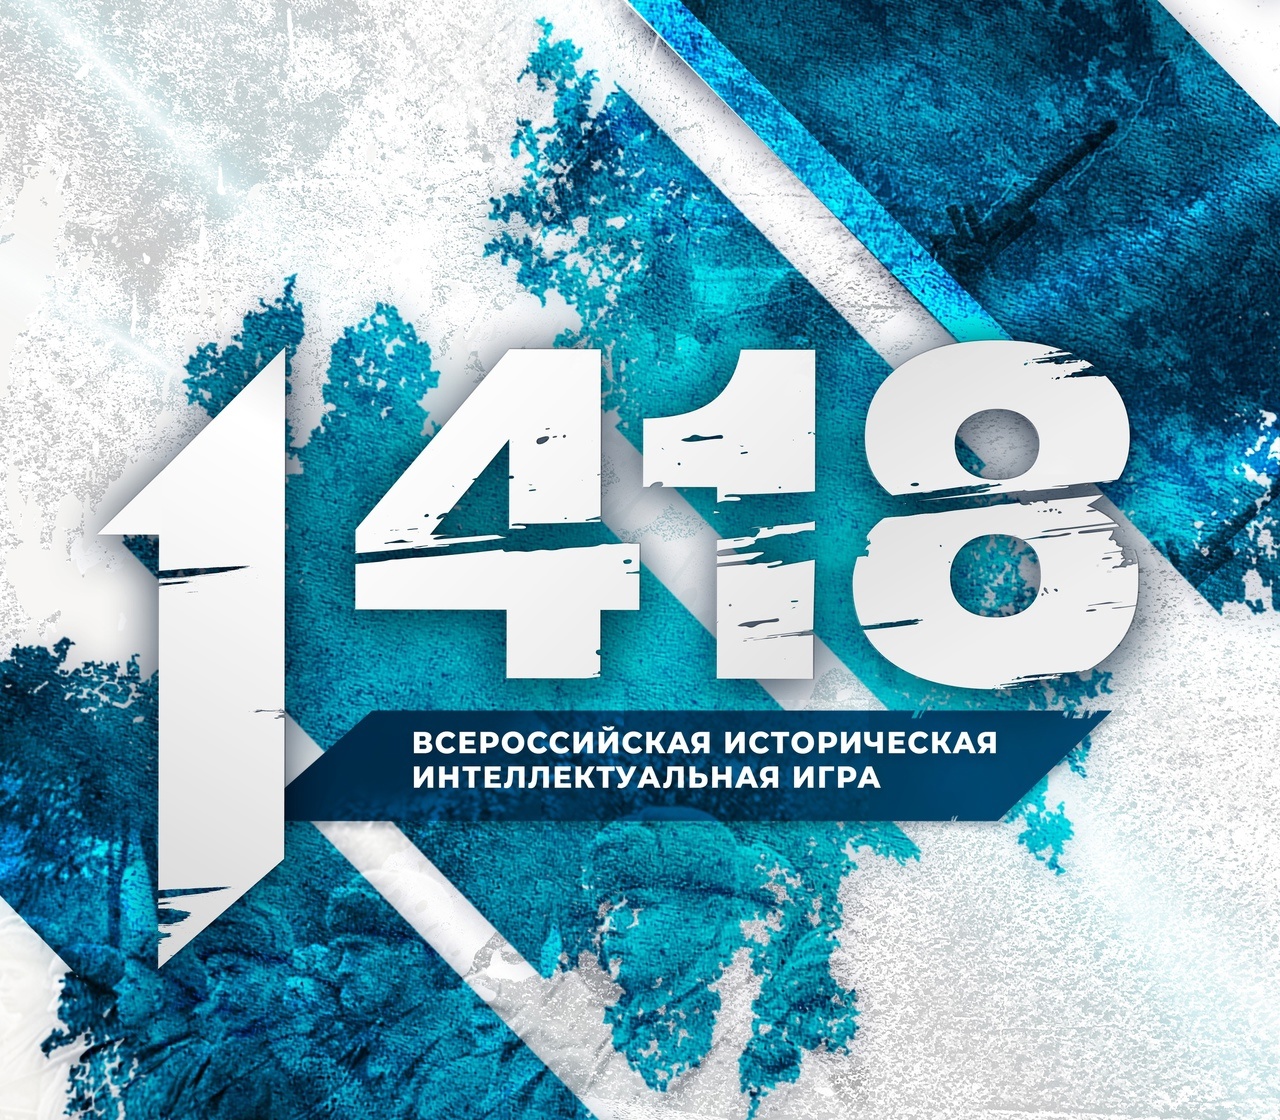 Всероссийская историческая интеллектуальная игра «1418» прошла сегодня на портале «игра-1418.рф».